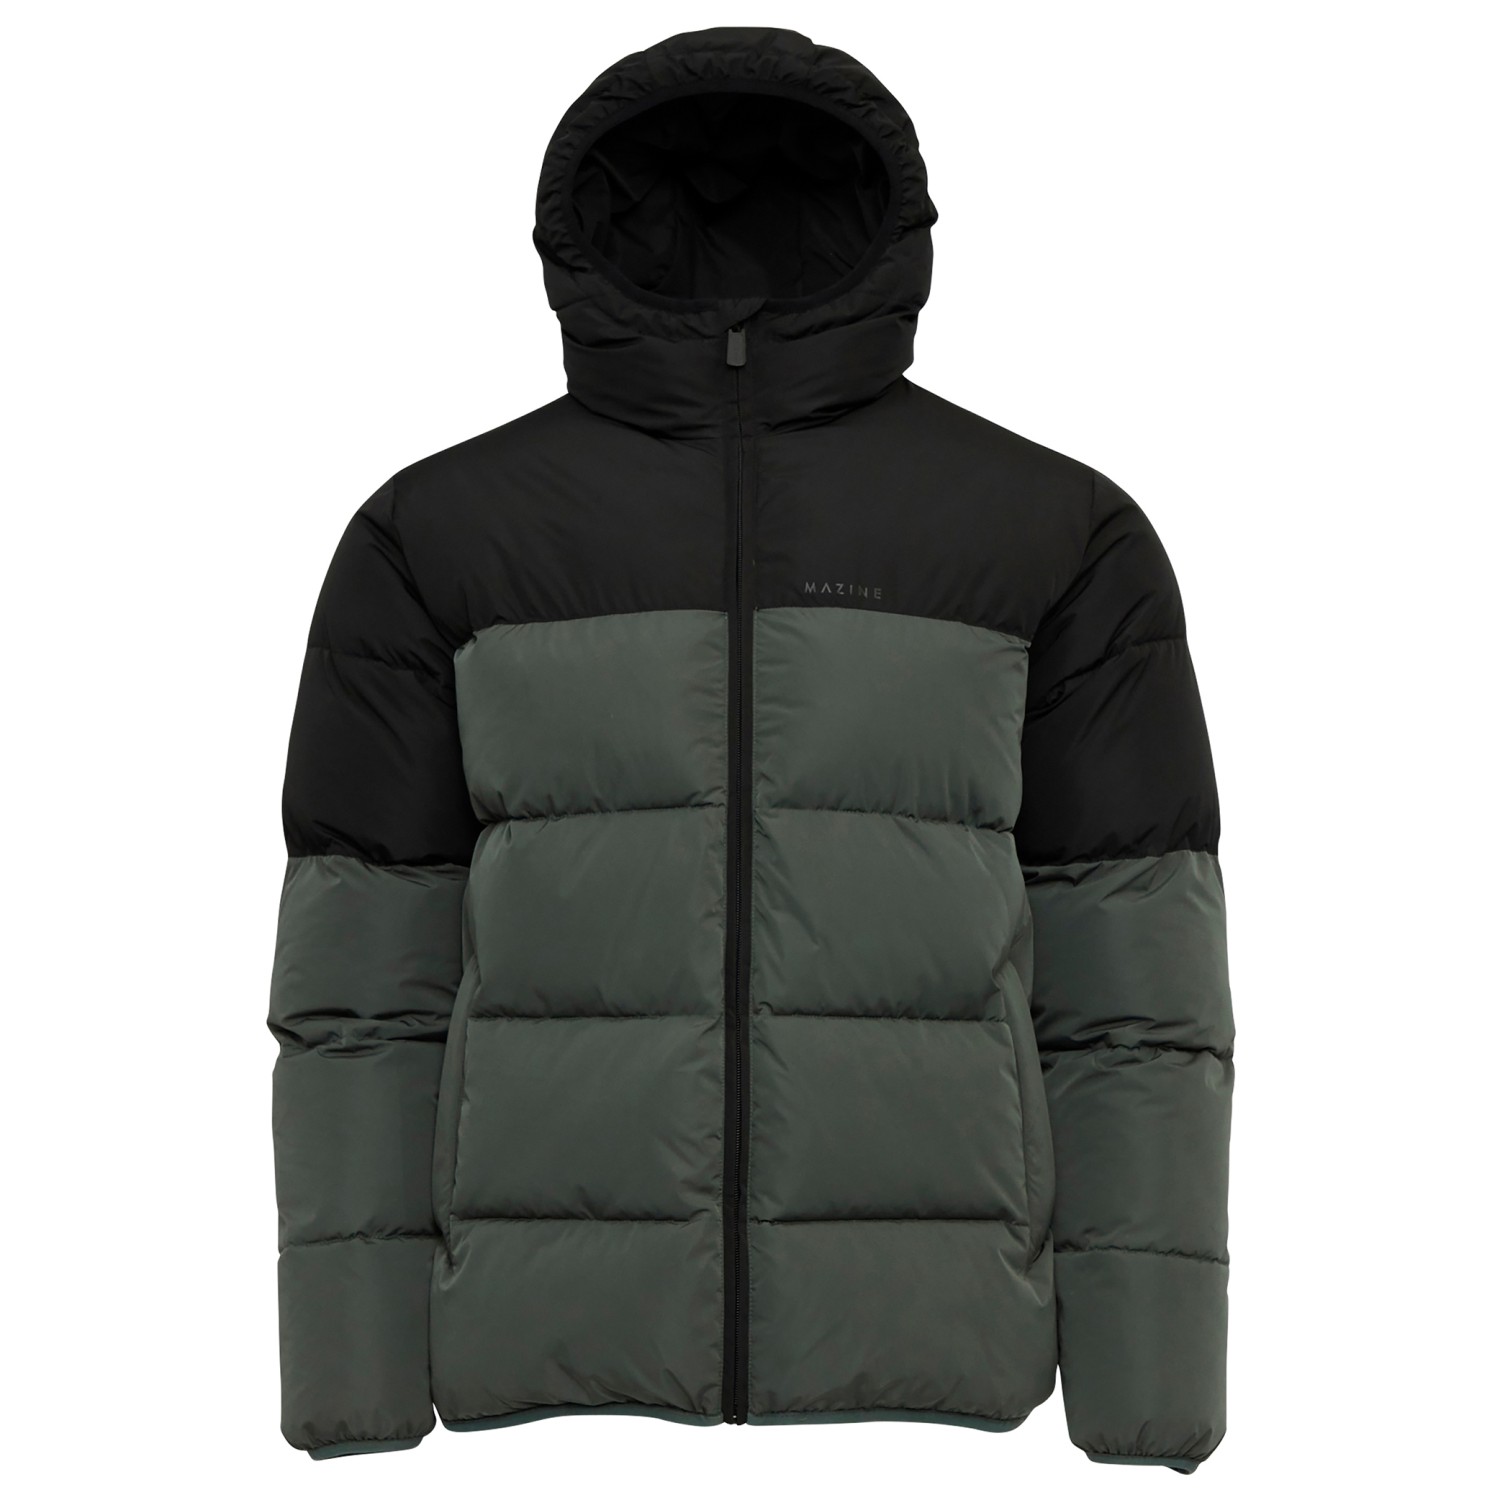 Зимняя куртка Mazine Driftwood Puffer, цвет Black/Bottle